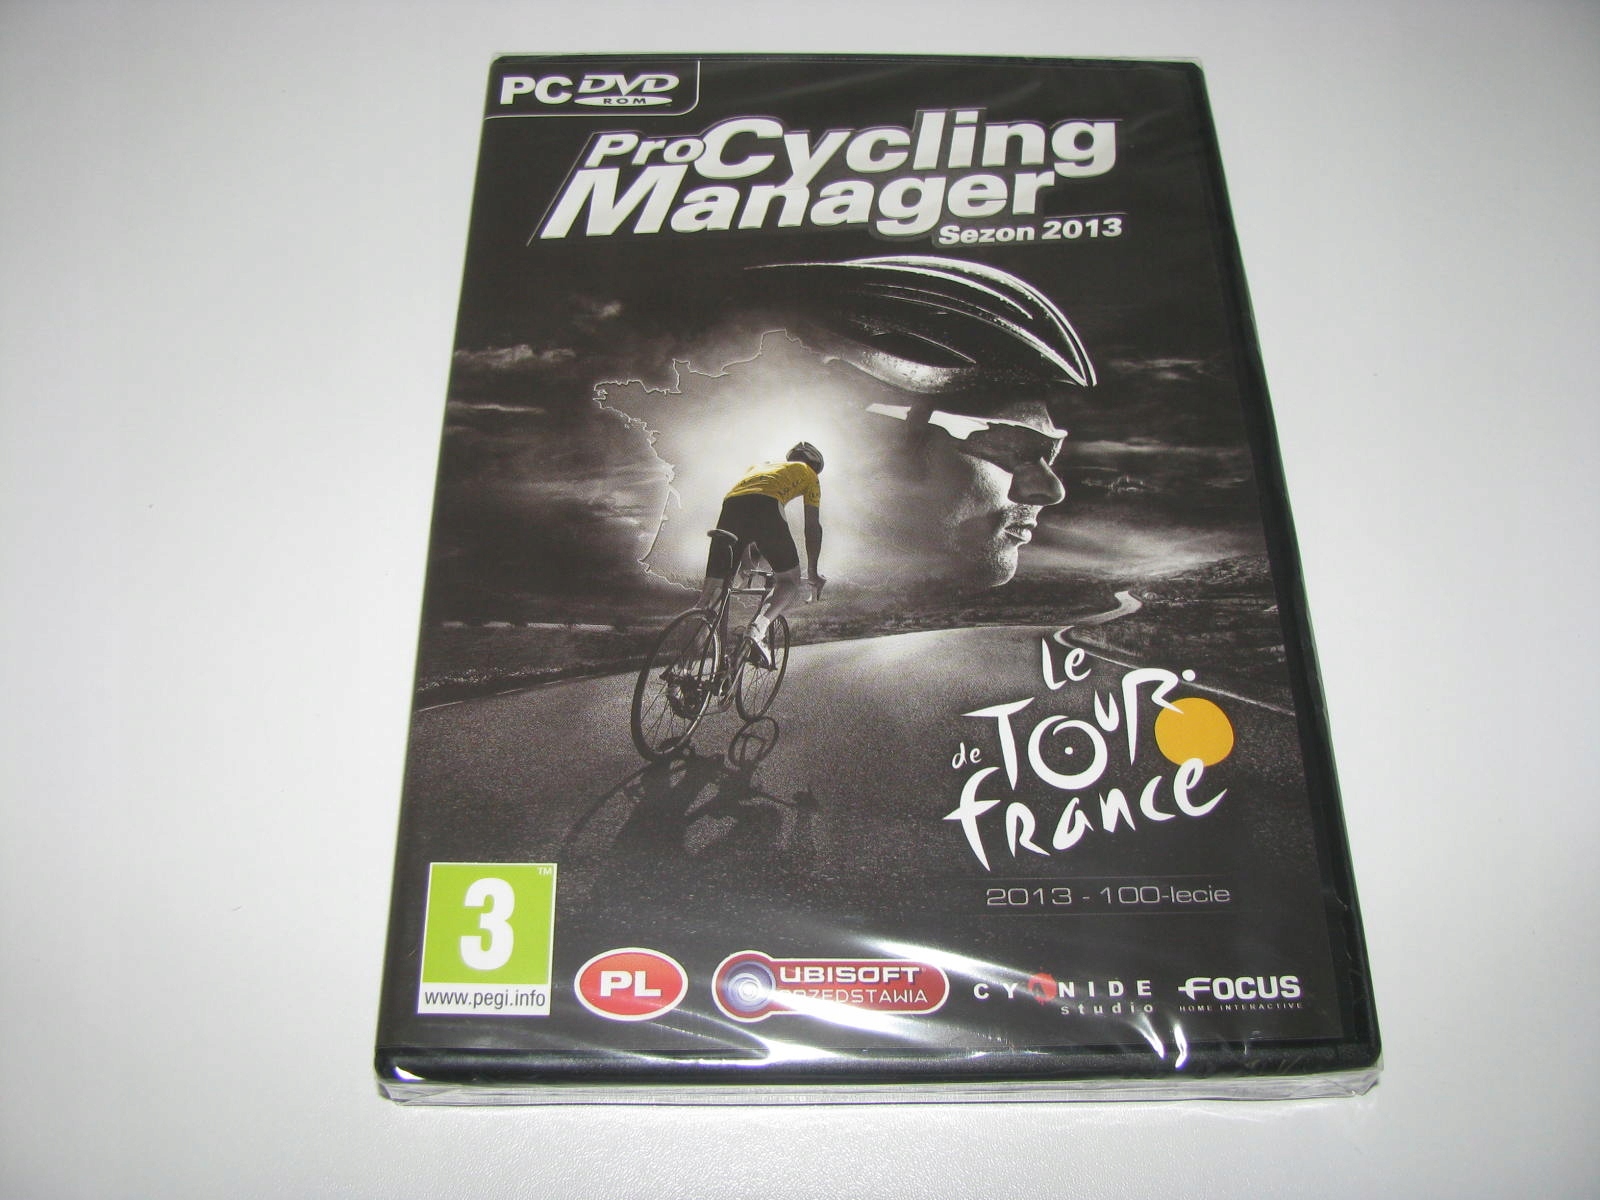 Gra Pro Cycling Manager 2023 STEAM - PEŁNA WERSJA PC - porównaj